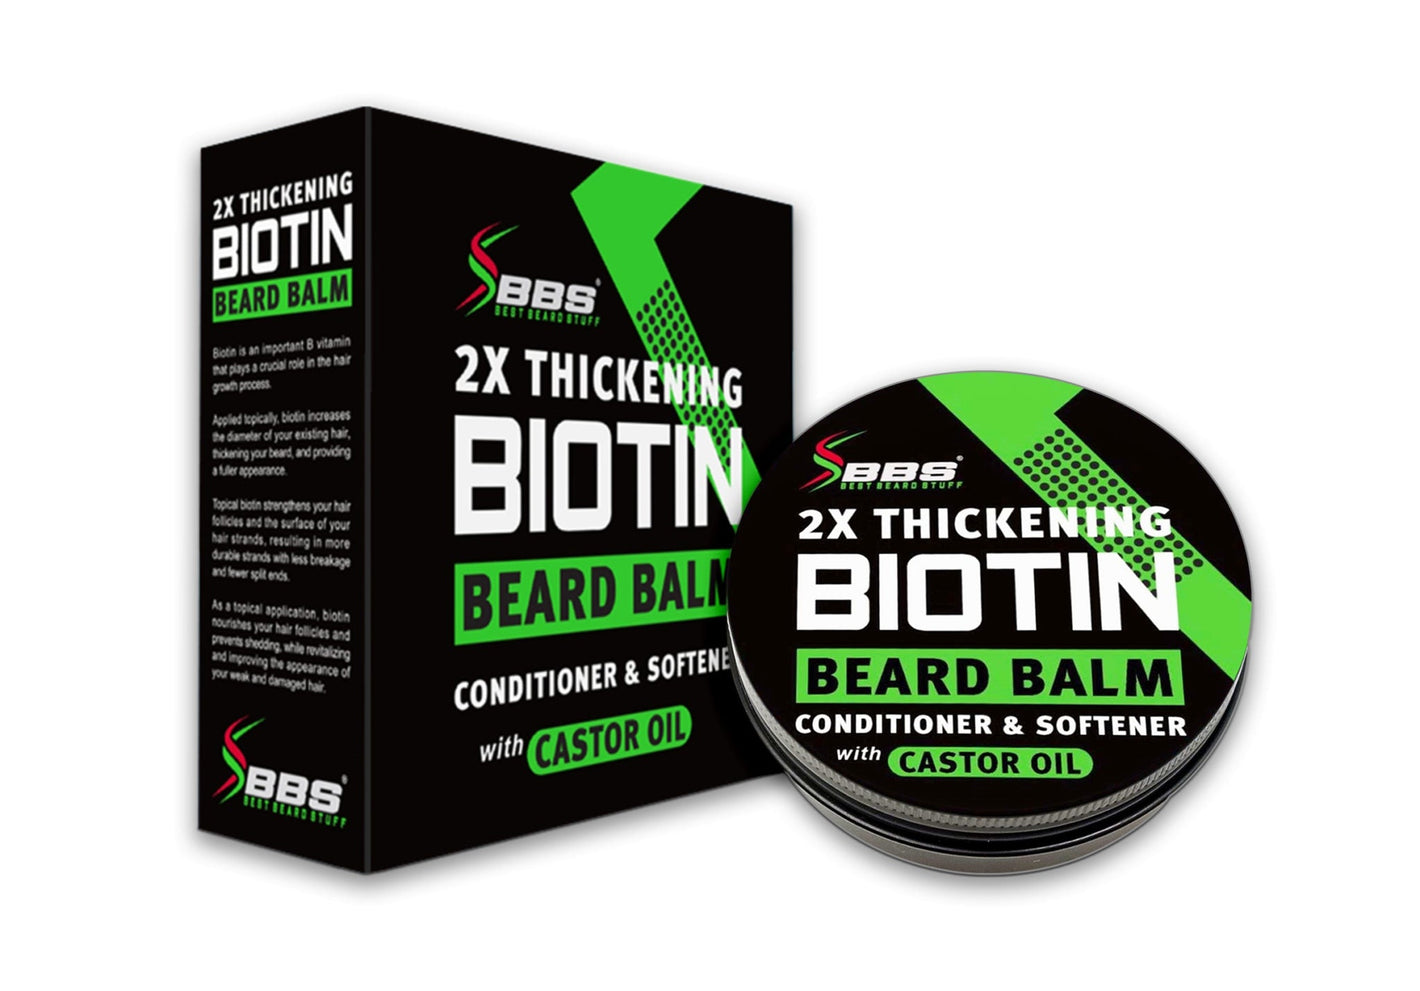 2X Thickening BIOTIN Beard Balm